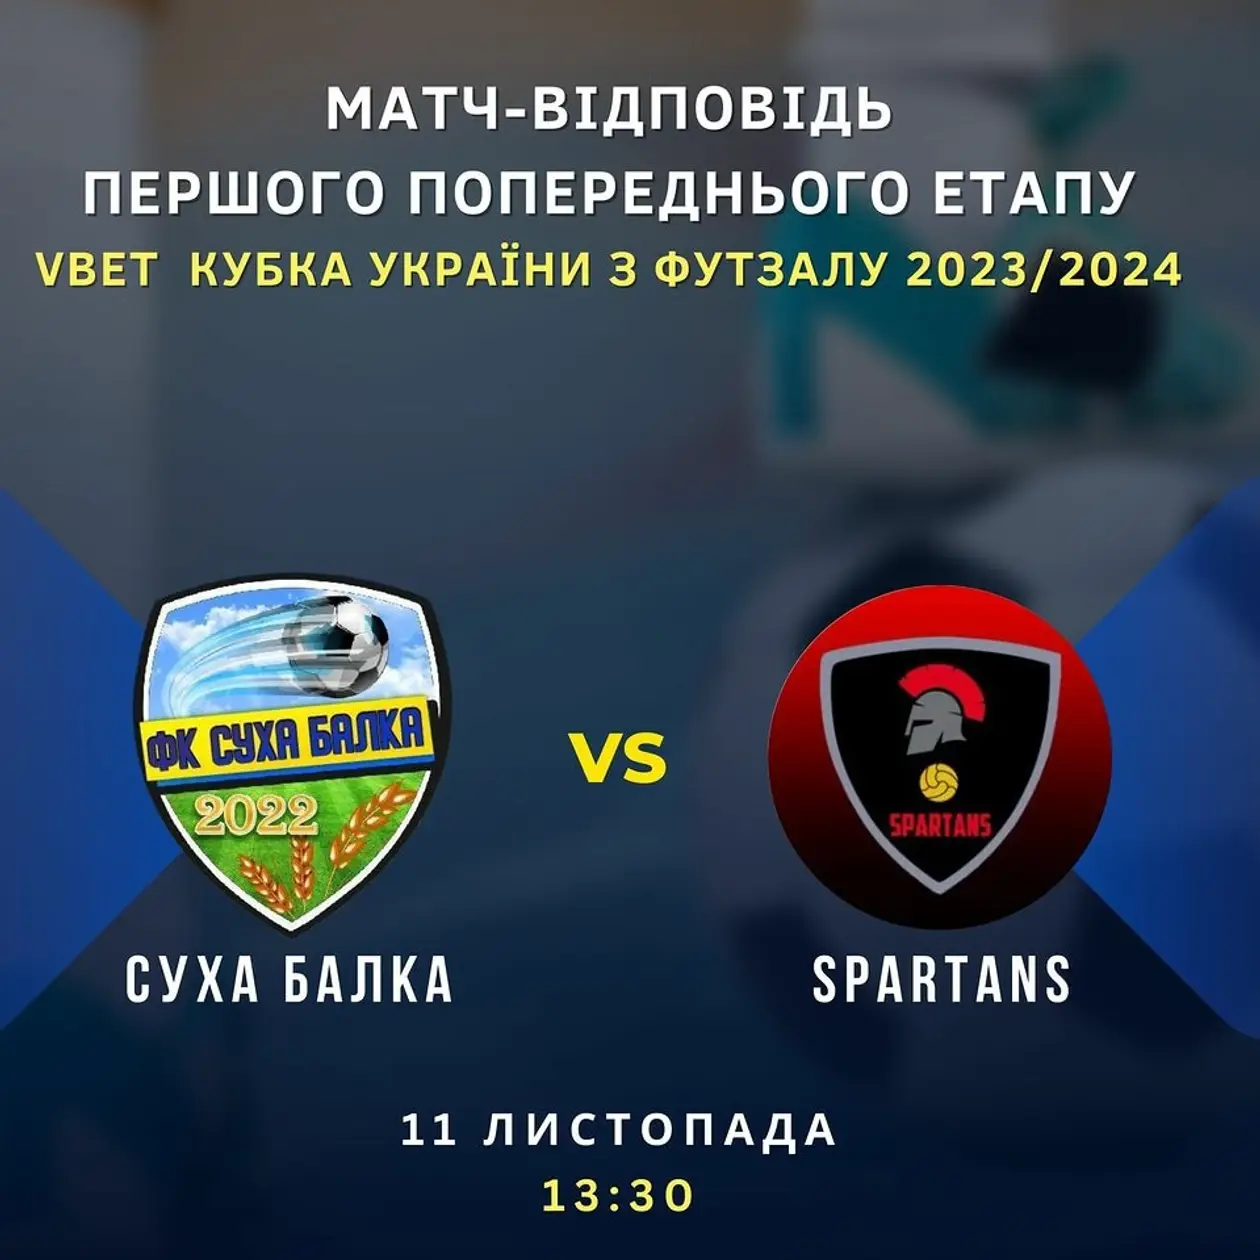 Кубок України з футзалу, харківський Spartans зробить історичний хід?